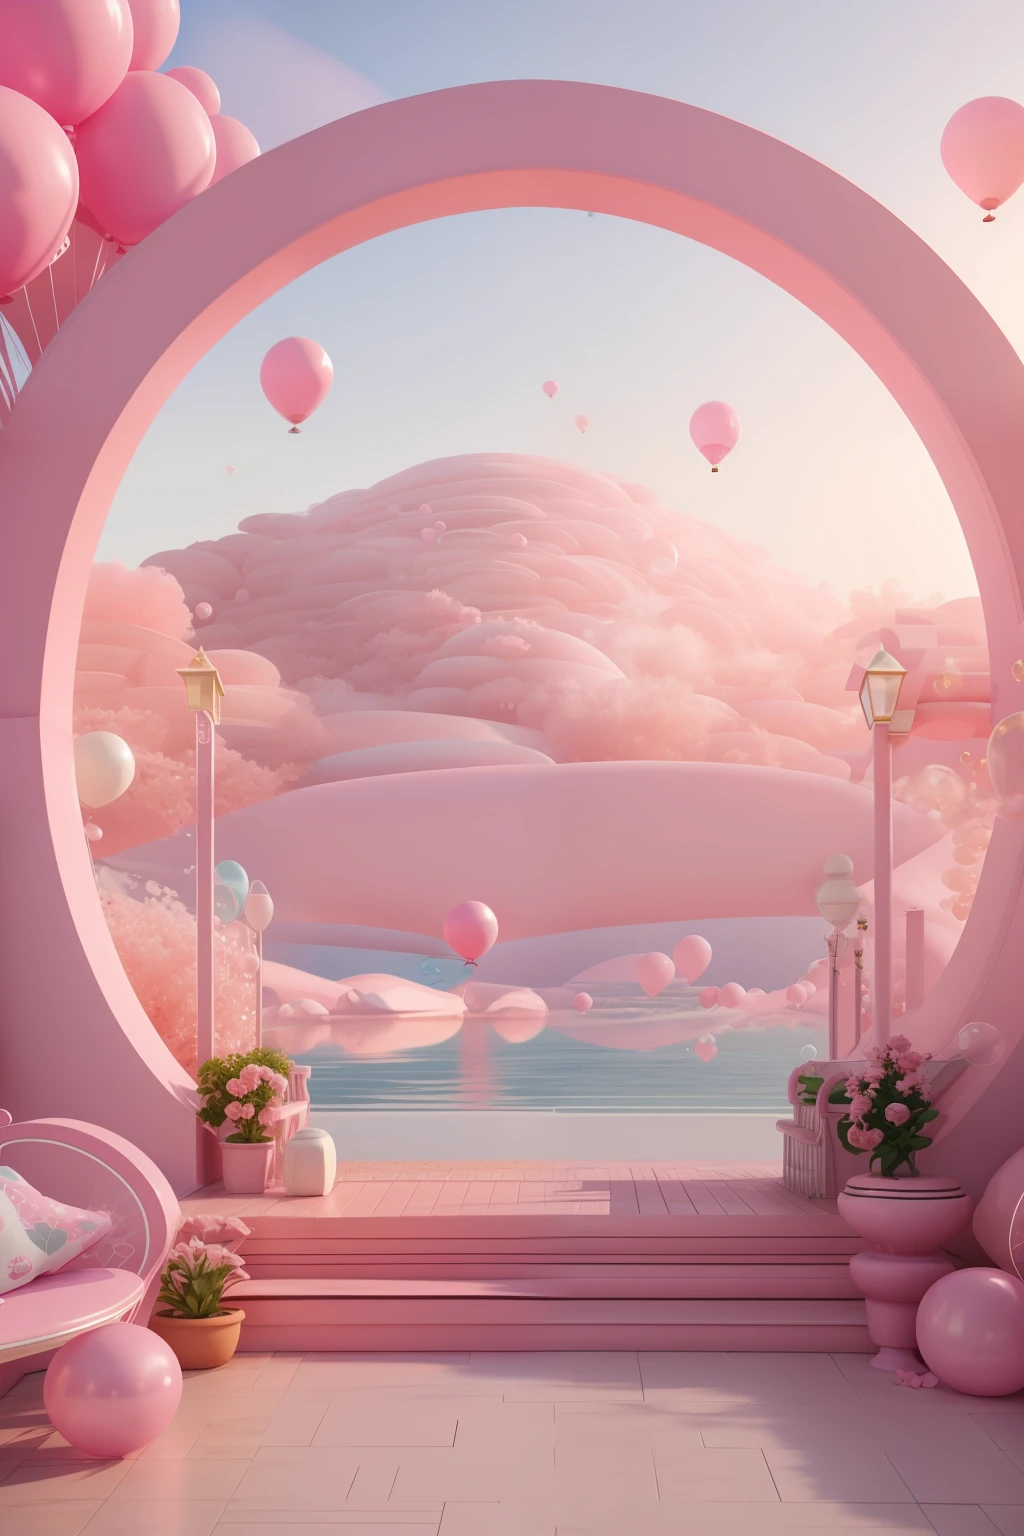 Es gibt einen rosa und weißen Bogen，Mit Luftballons und Bänken, rosa Zen-Stil, rosa landschaft, verträumte Szenen, Blick auf einen rosa Ozean, 3D-Rendering stilisiert, stilisiertes 3D-Rendering, surreales 3D-Rendering, sprudelnde Landschaft, surreale Traumlandschaft, 3D-Stilisierte Szene, stilisiert als 3D-Rendering, verträumte Atmosphäre und Drama